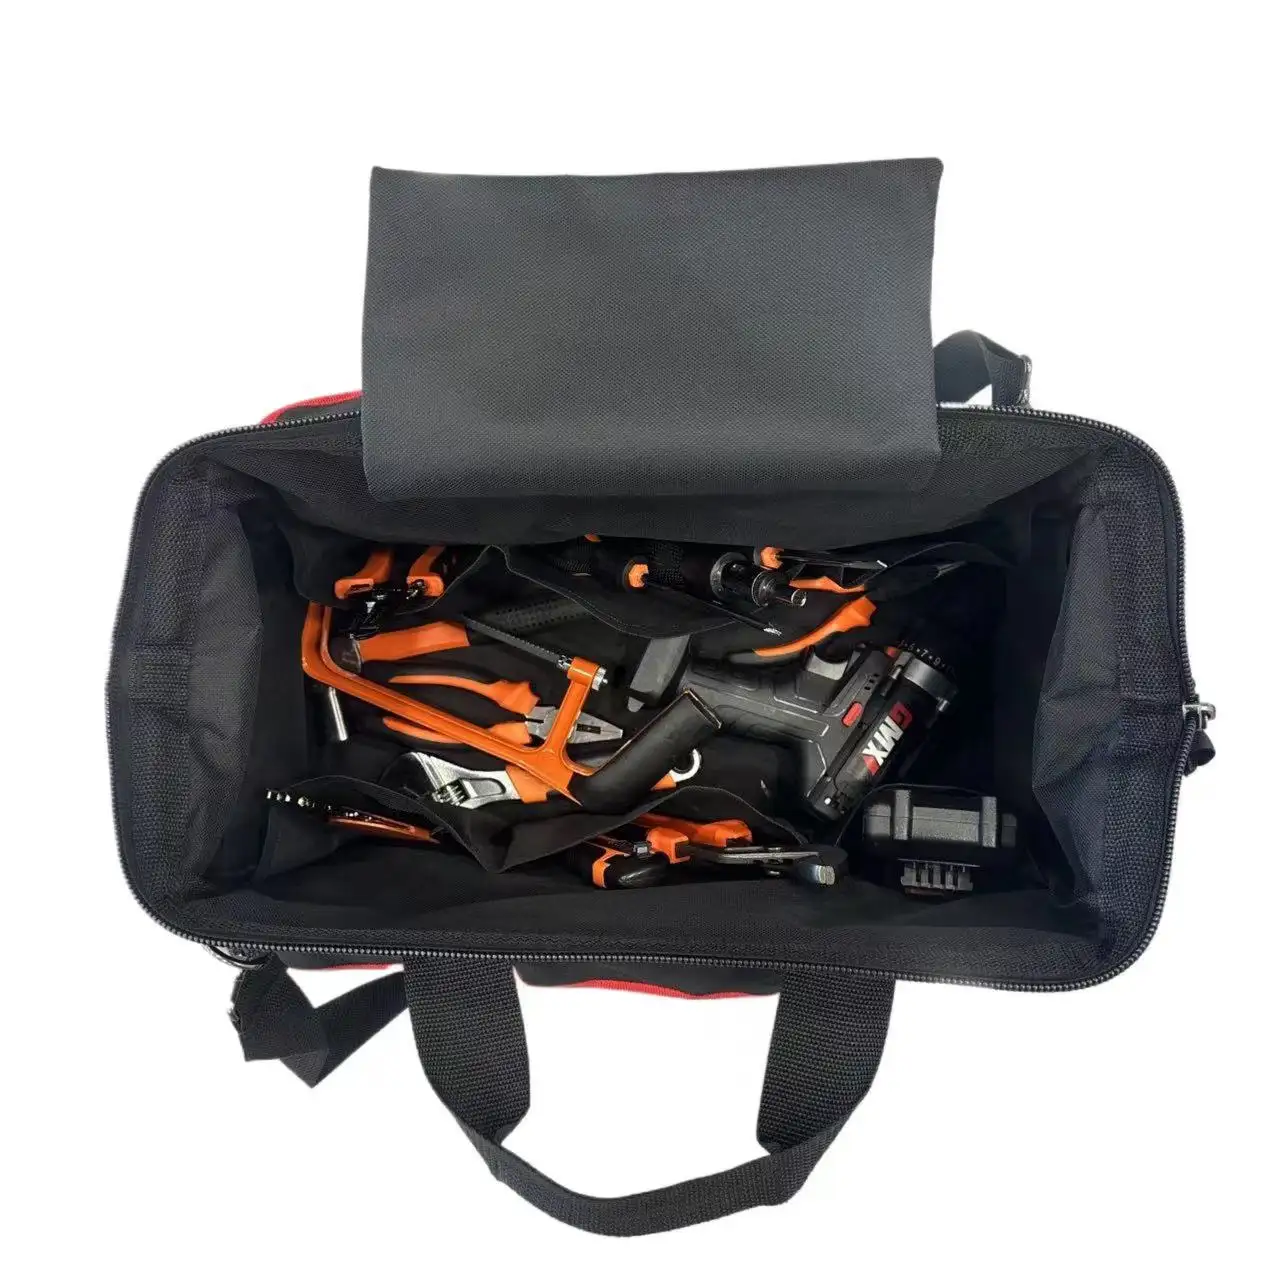 Tool bag waterproof soft bottom  multi-pocket wide mouth tool bag with adjustable shoulder strap